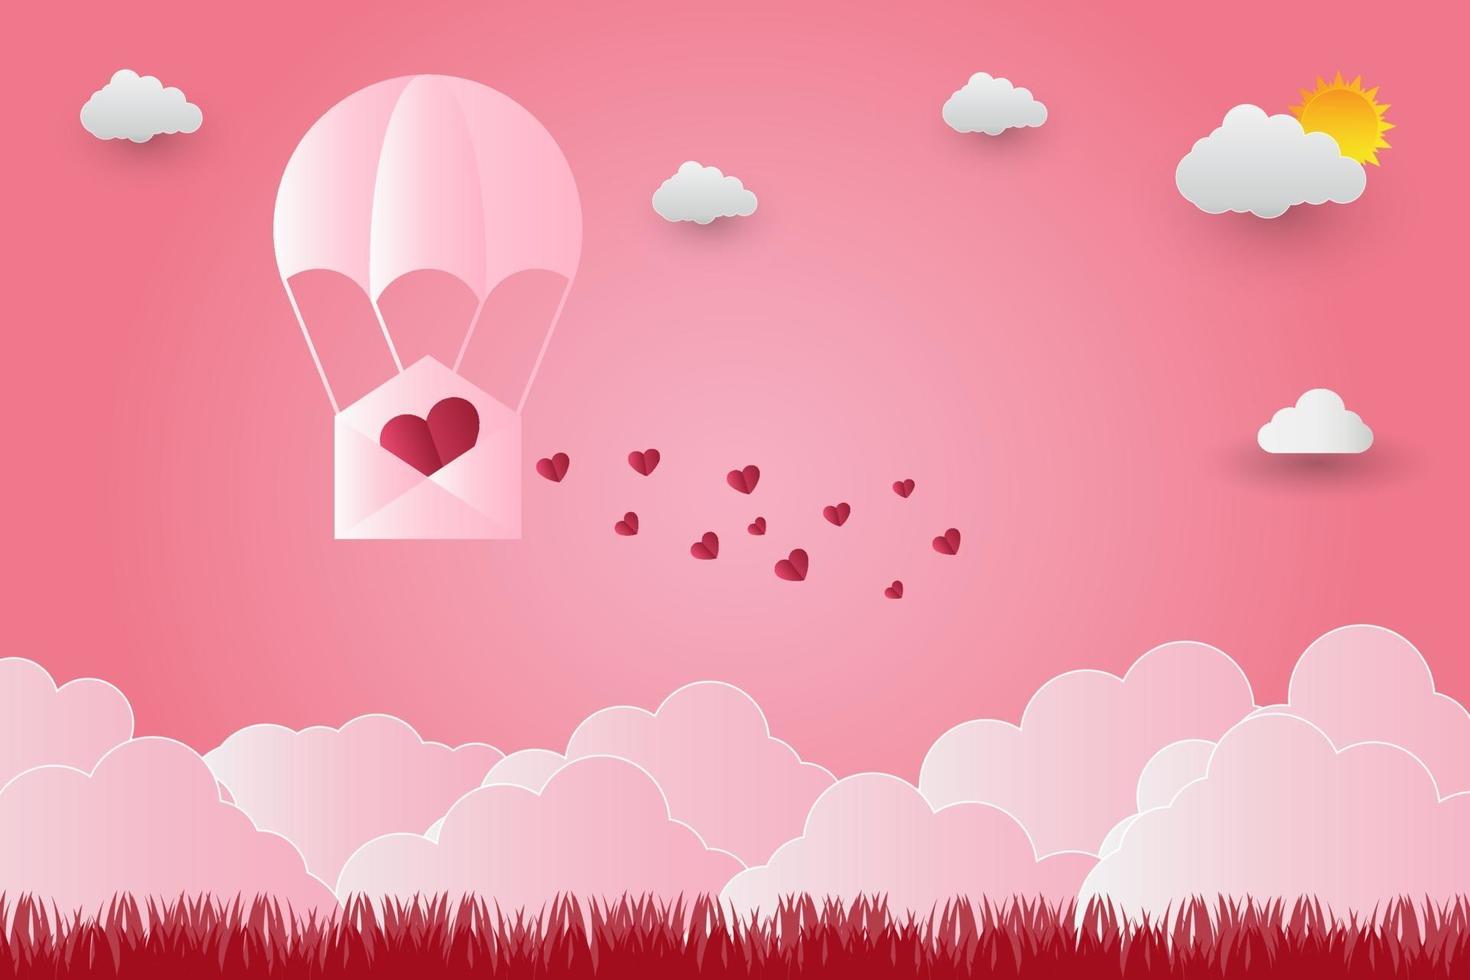 Alla hjärtans dag ballonger i ett hjärtformat flygande över gräs vy bakgrund, papper konst stil. vektor illustratör